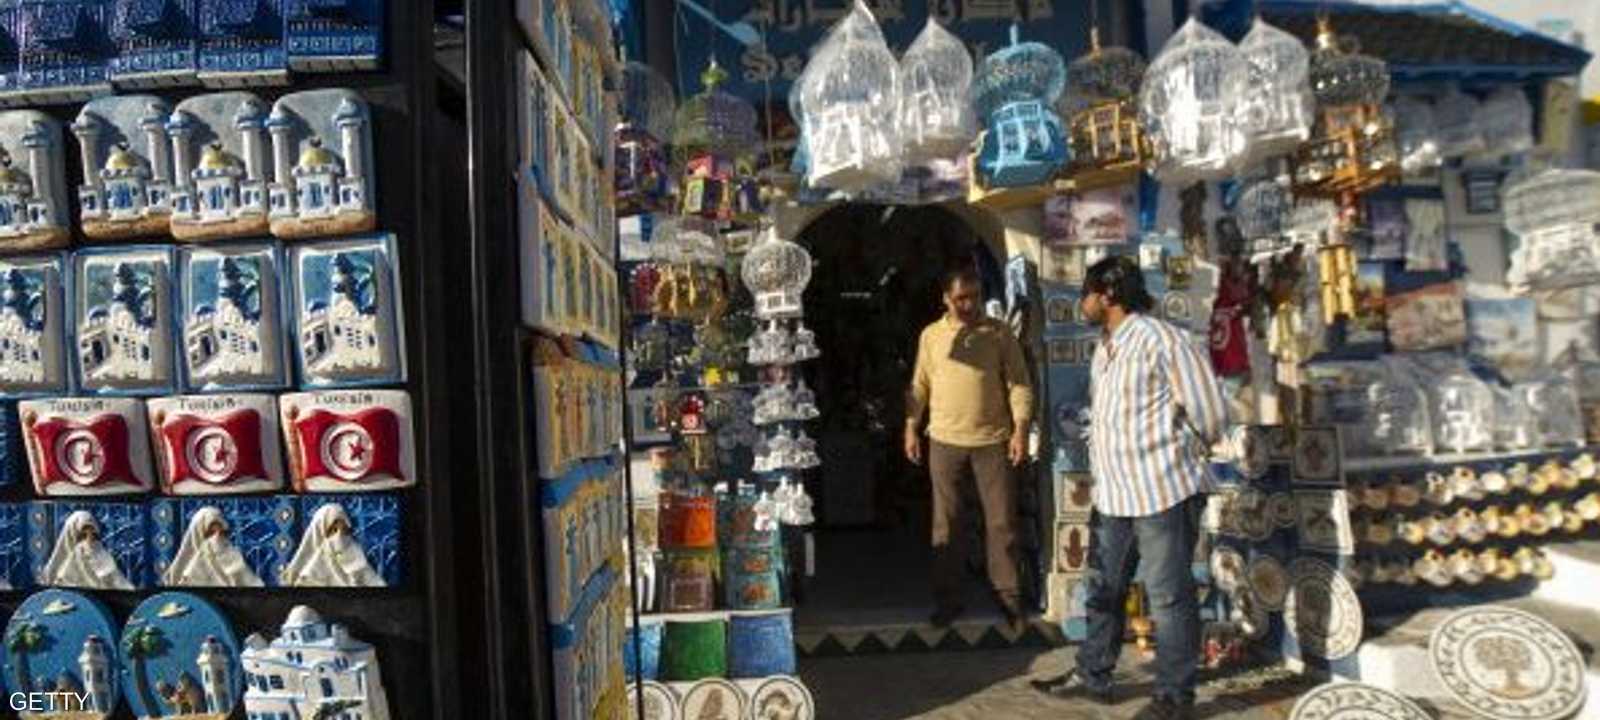 تضررت السياحة في تونس بسبب الهجمات الإرهابية